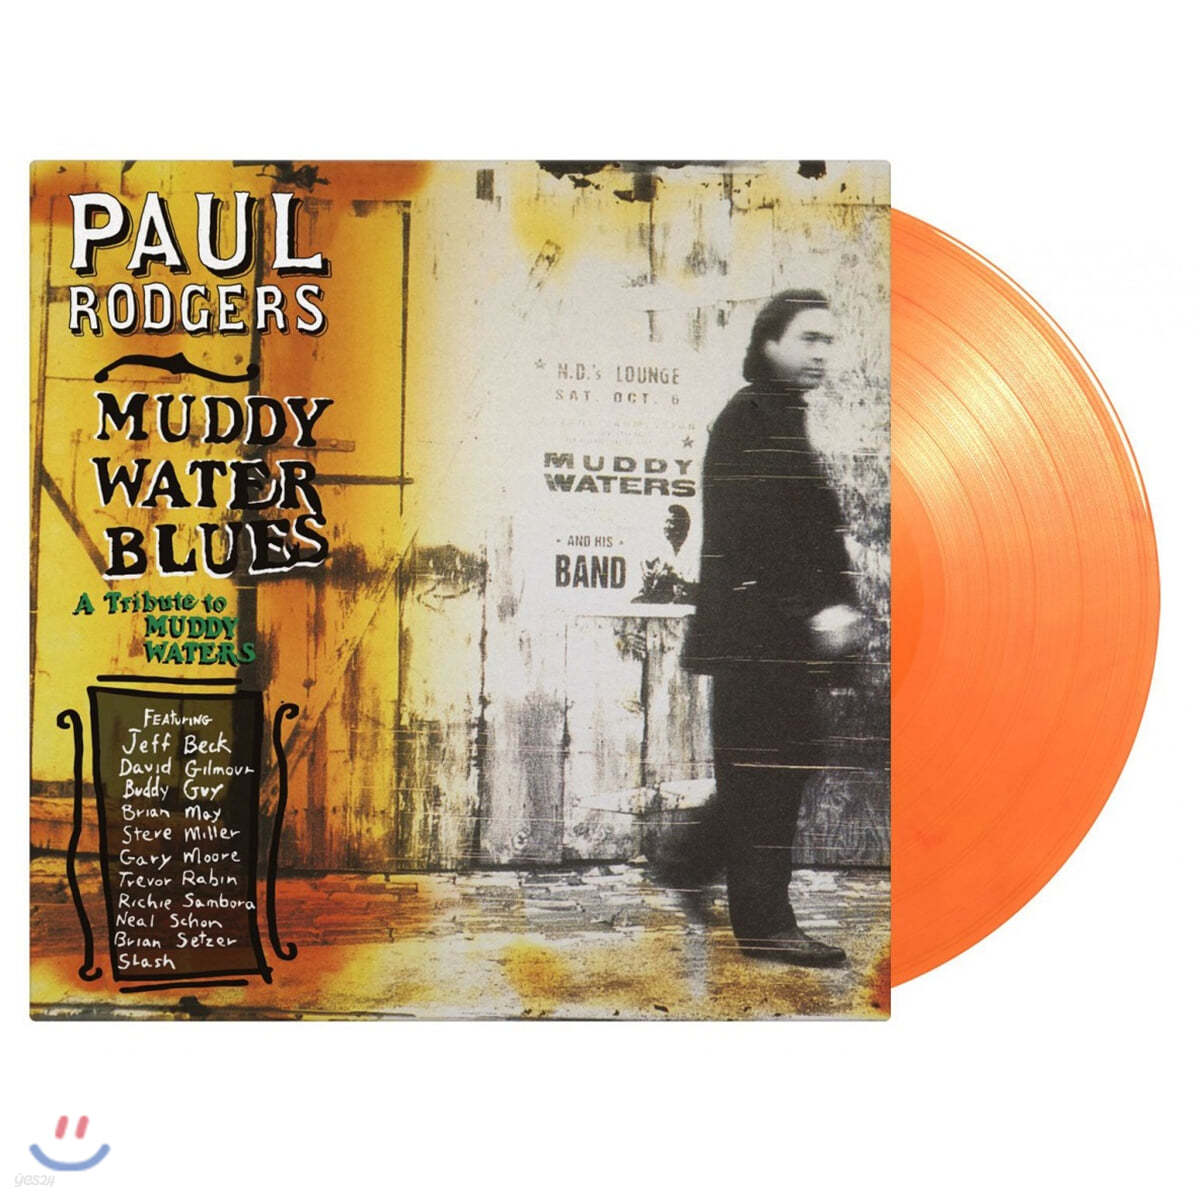 Paul Rodgers (폴 로저스) - Muddy Water Blues [오렌지 컬러 2LP] 